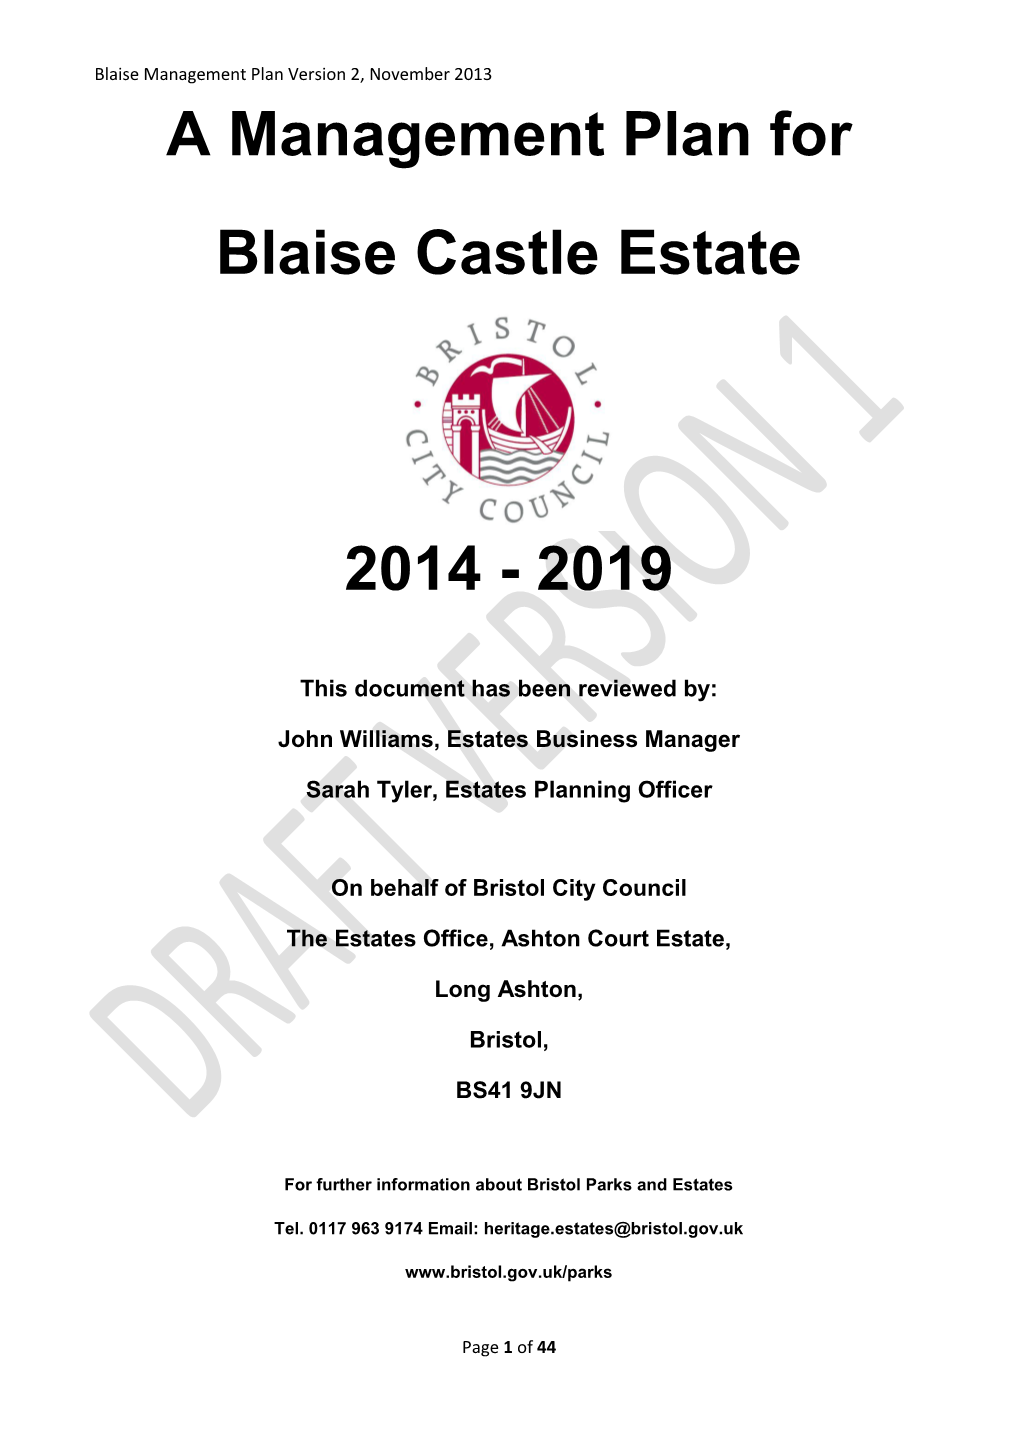 A Management Plan for Blaise Castle Estate 2014